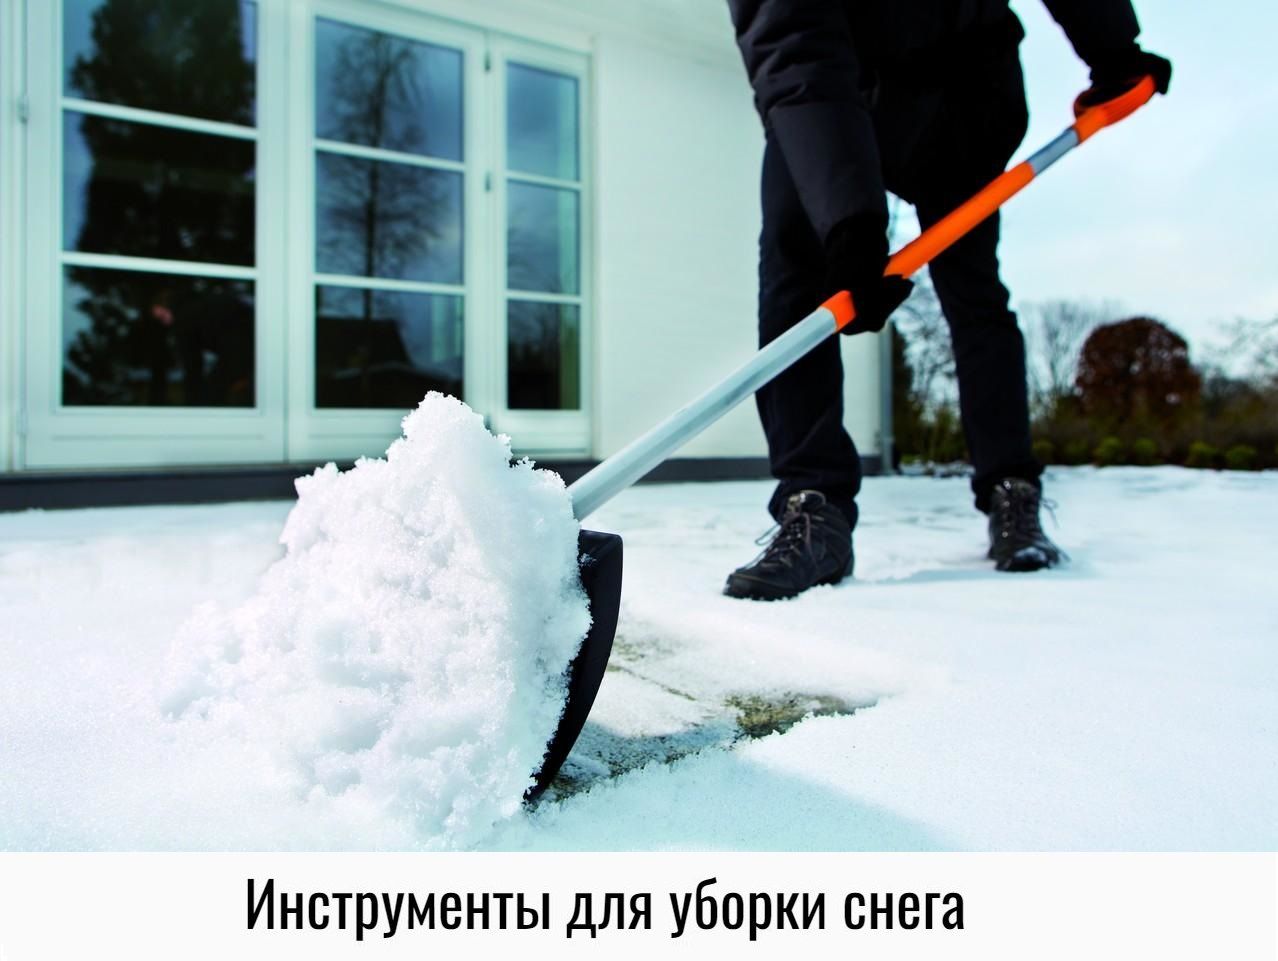 Очистка дома от снега. Уборка снега. Убирает снег. Лопата для снега. Уборкака снега.